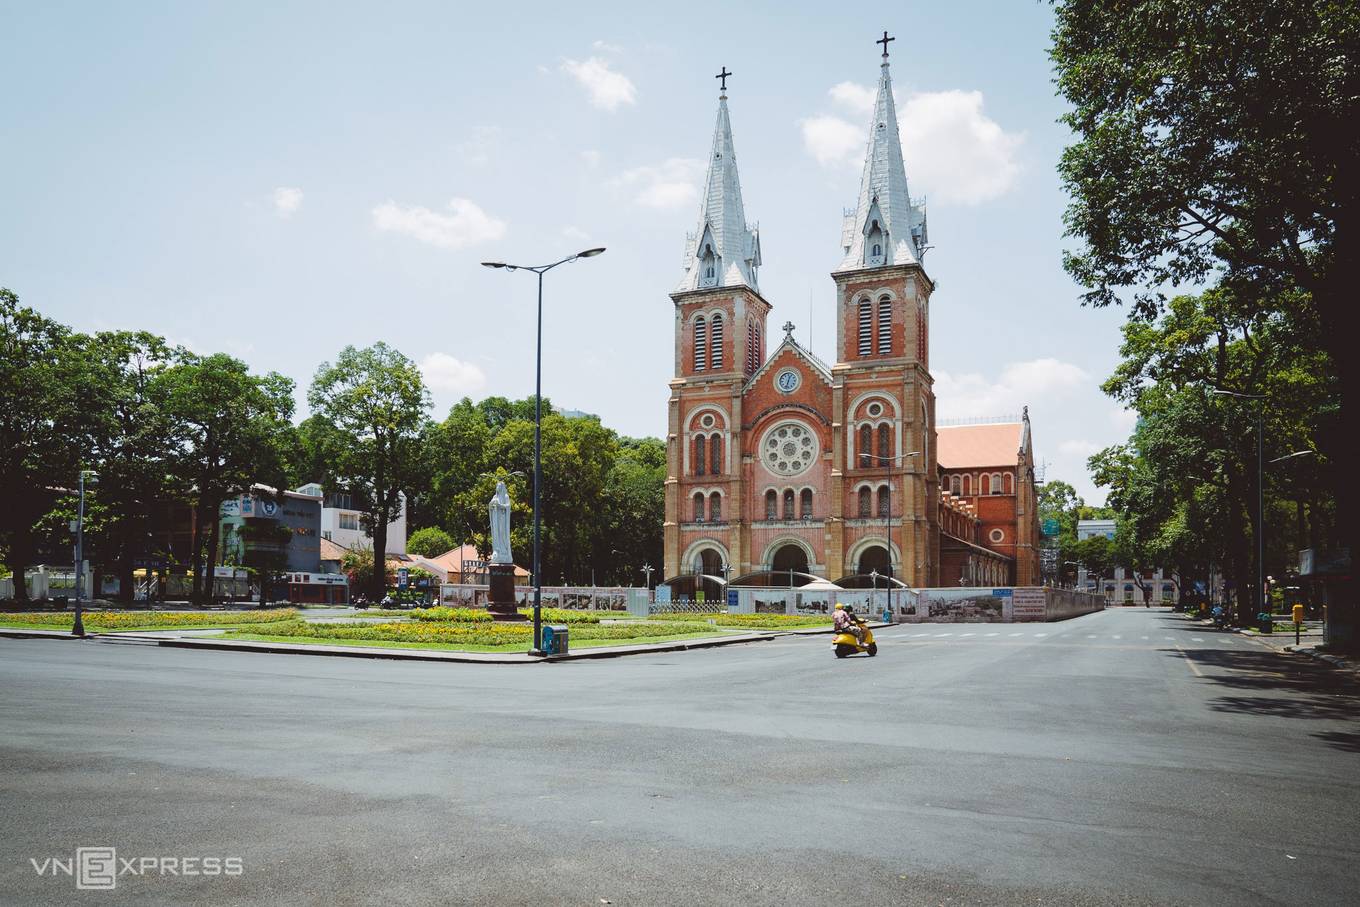 Giao thông thưa thớt tại khu vực xung quanh Nhà thờ Đức Bà, Quận 1. Đây một trong những công trình kiến trúc độc đáo của Sài Gòn, được khởi công trùng tu đầu năm 2018, đến nay nhiều hạng mục sửa chữa đã hoàn thành.